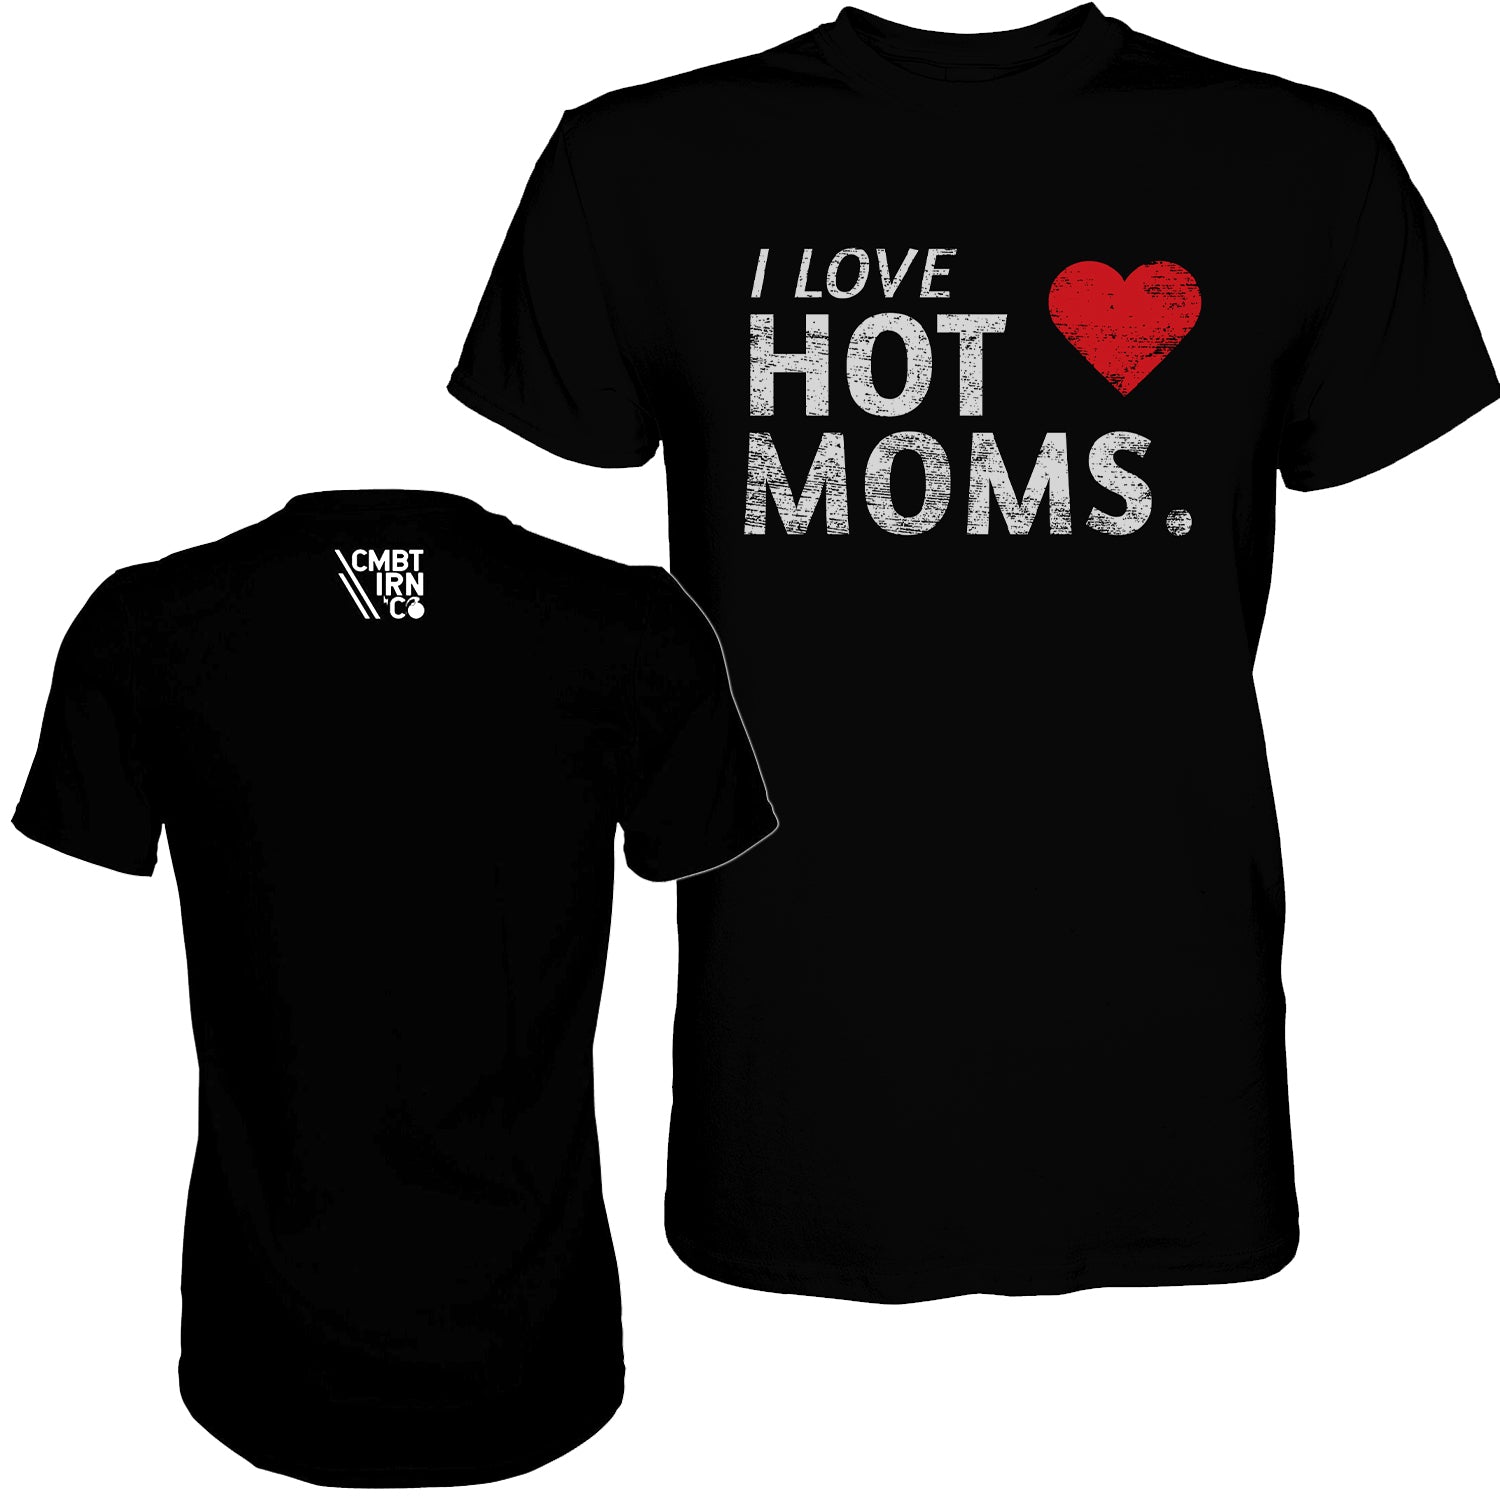 I Love Hot Moms Men’s T Shirt Combat Iron Apparel Co